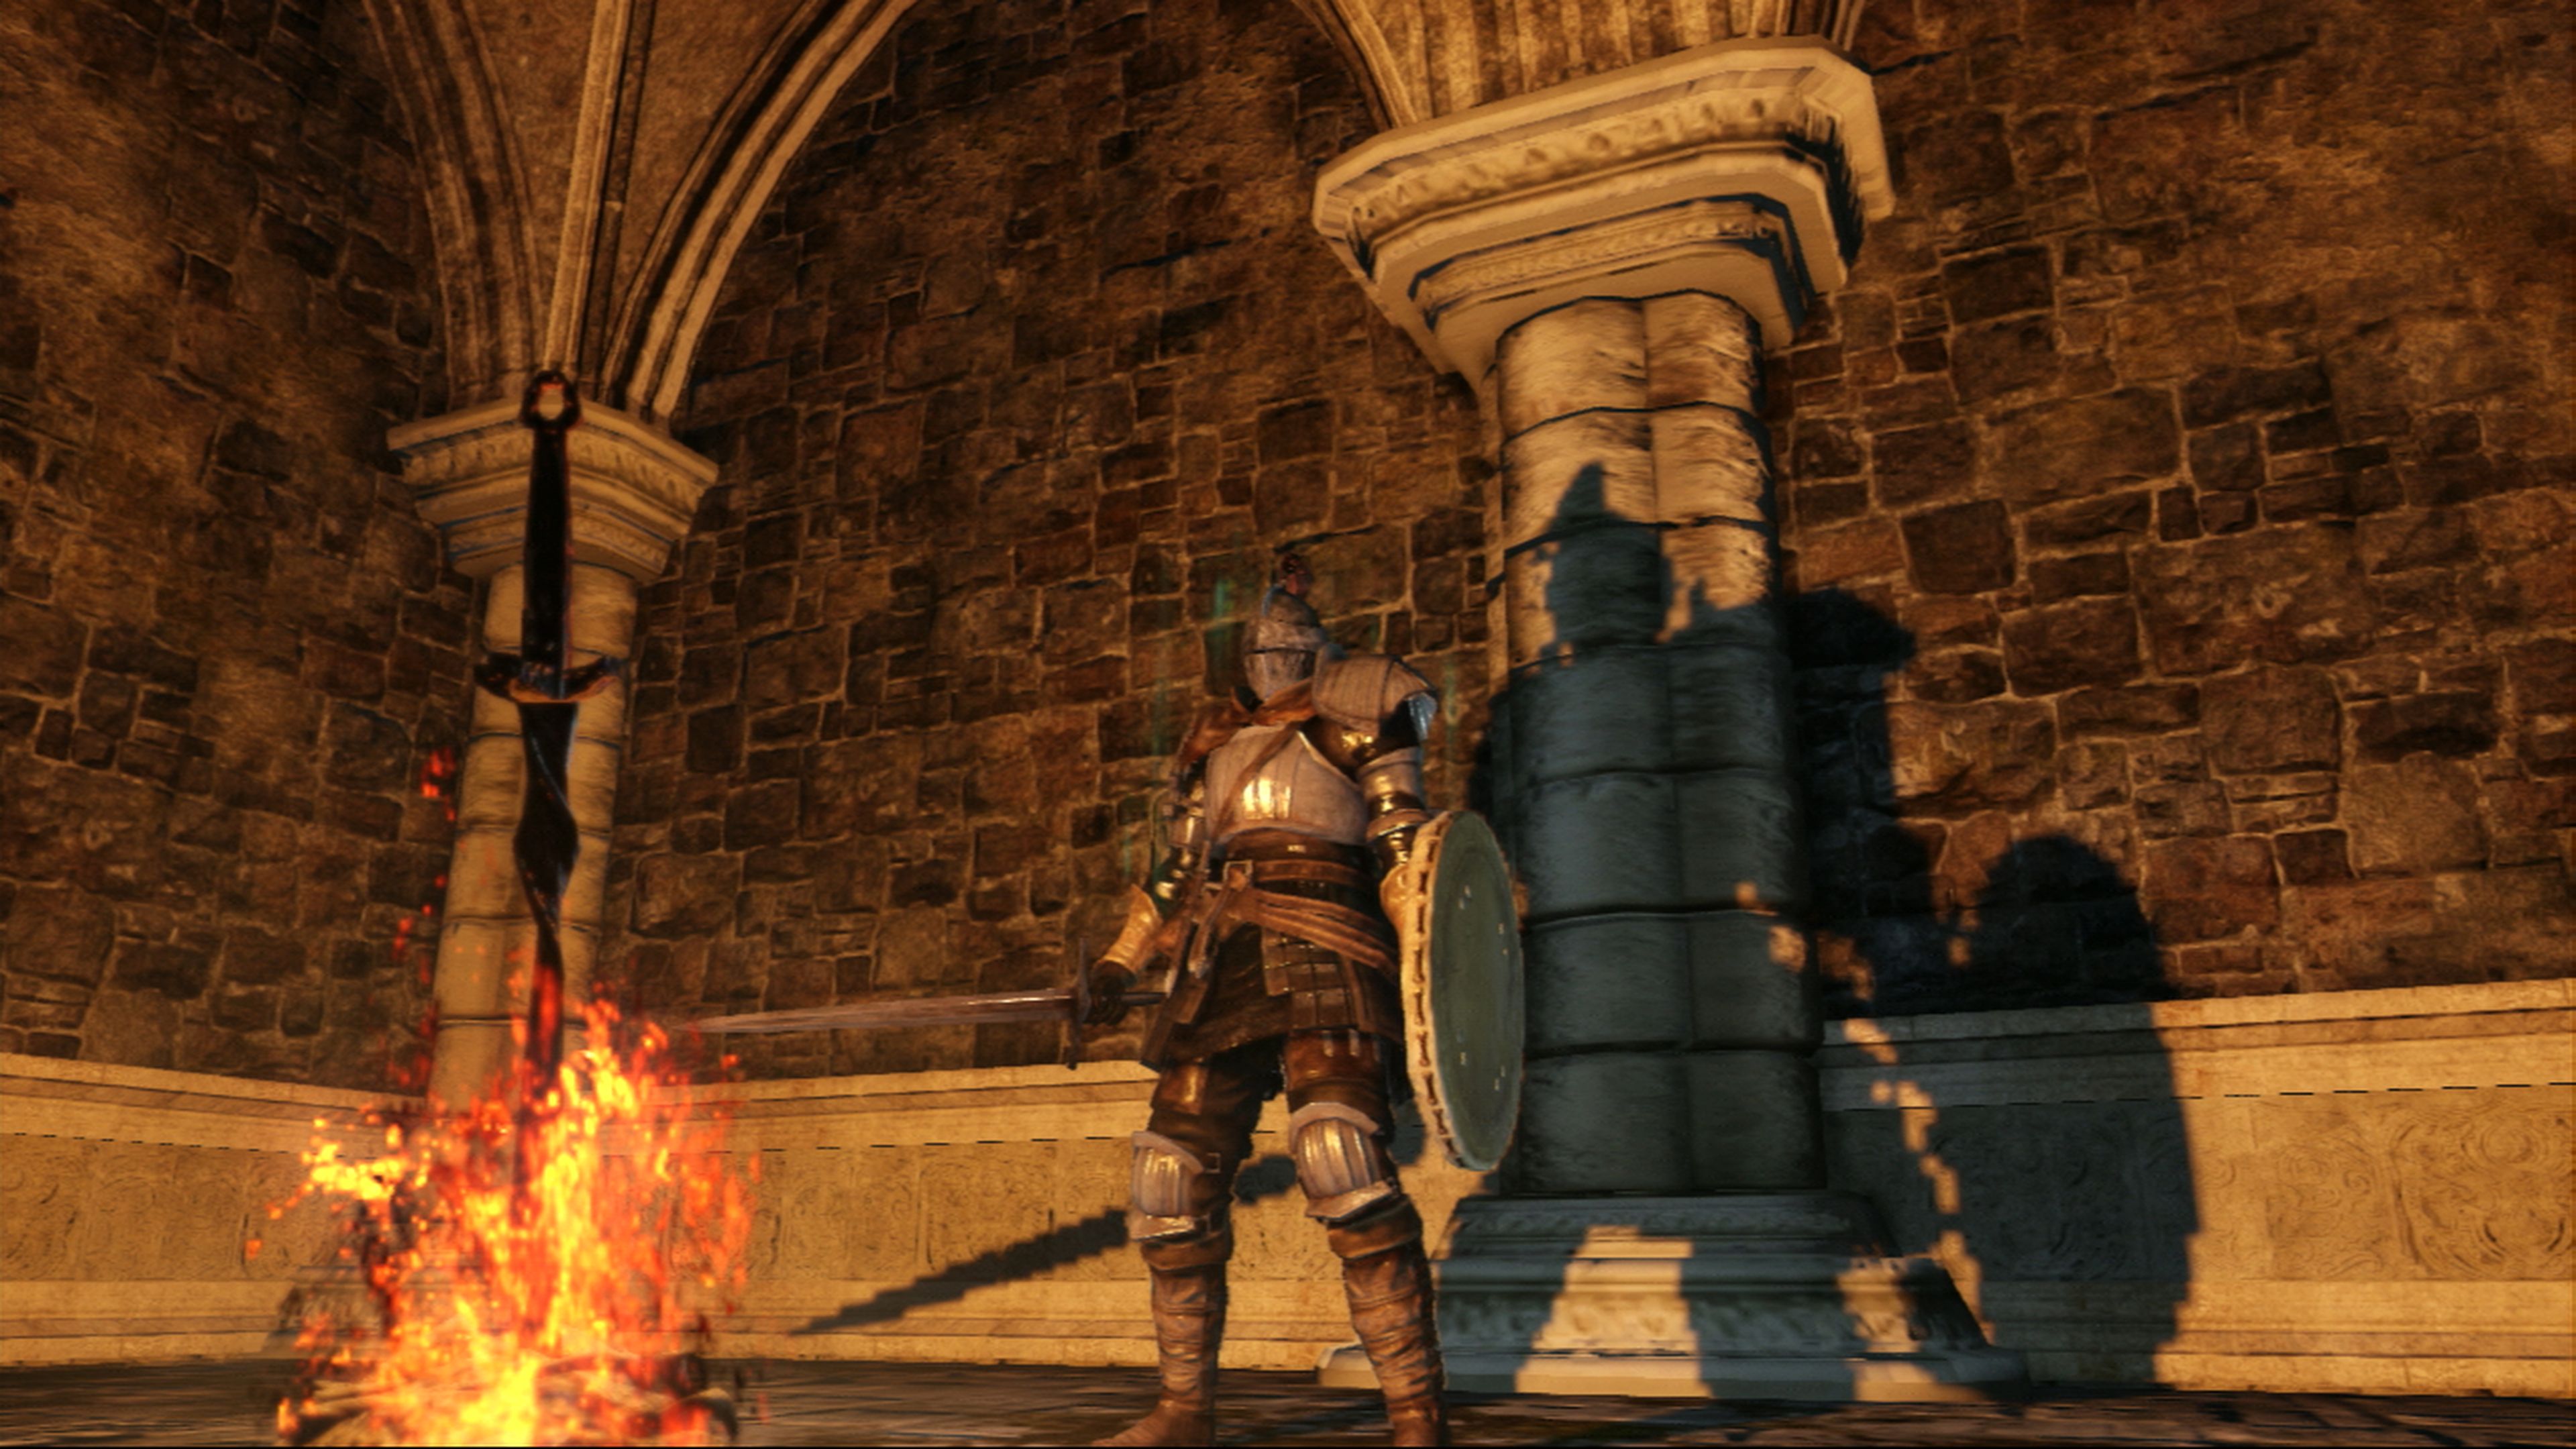 Análisis de Dark Souls II en PS3 y Xbox 360